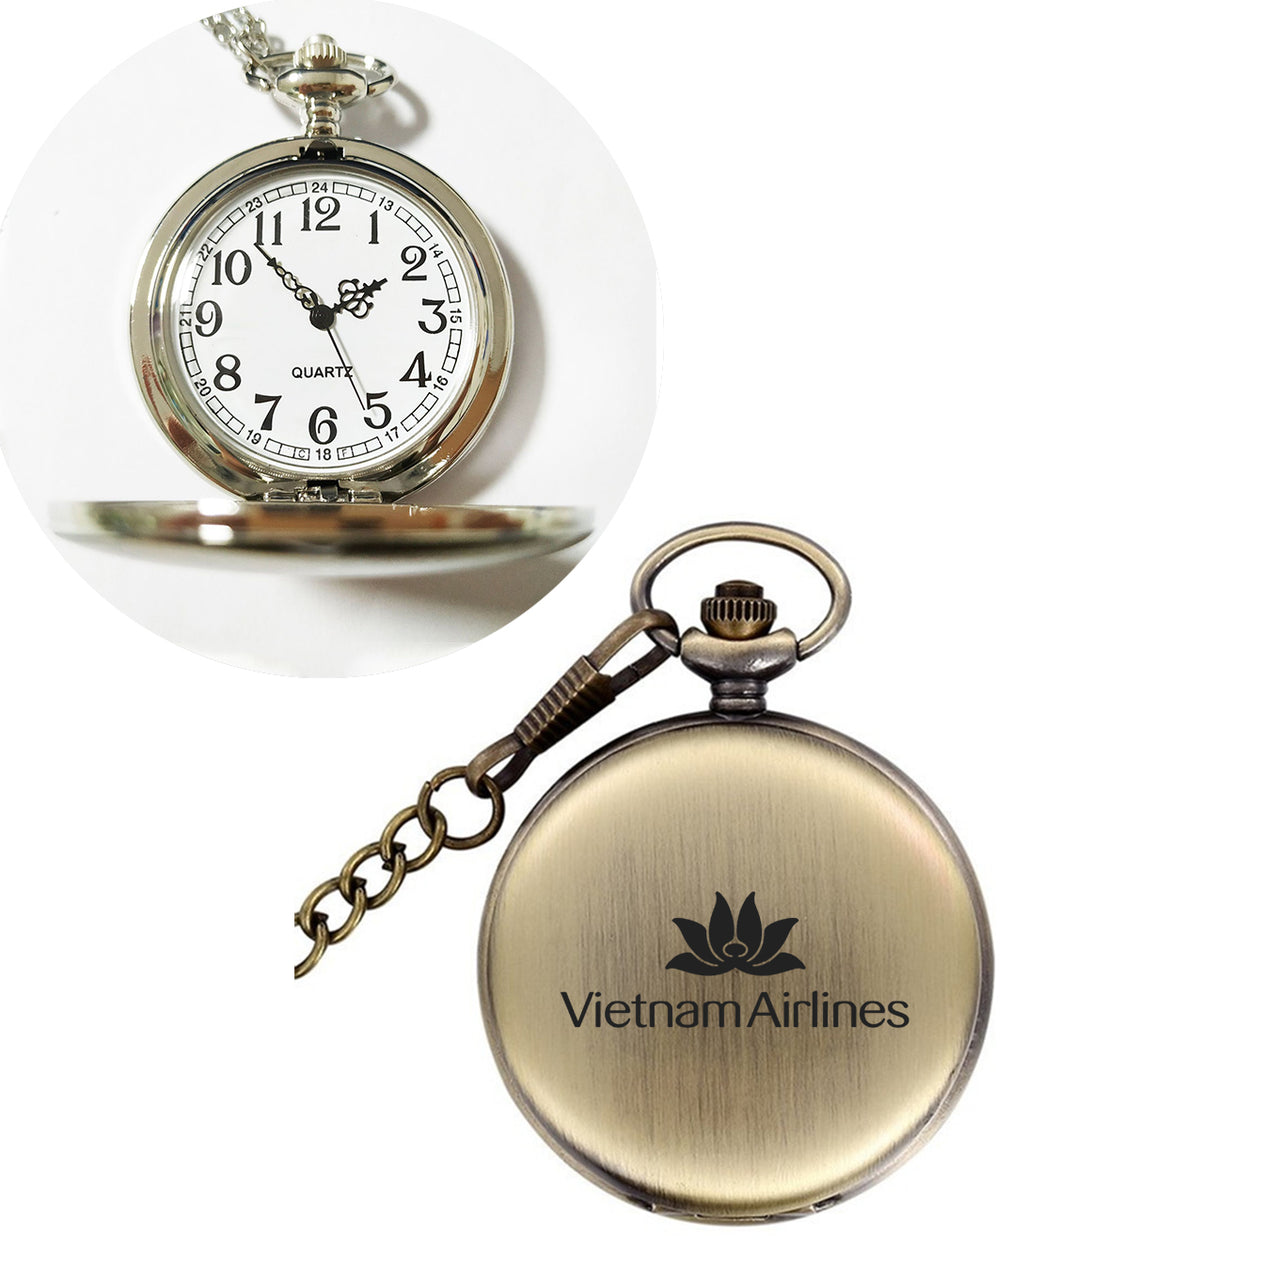 Vietnam Airlines Designed Pocket Watches